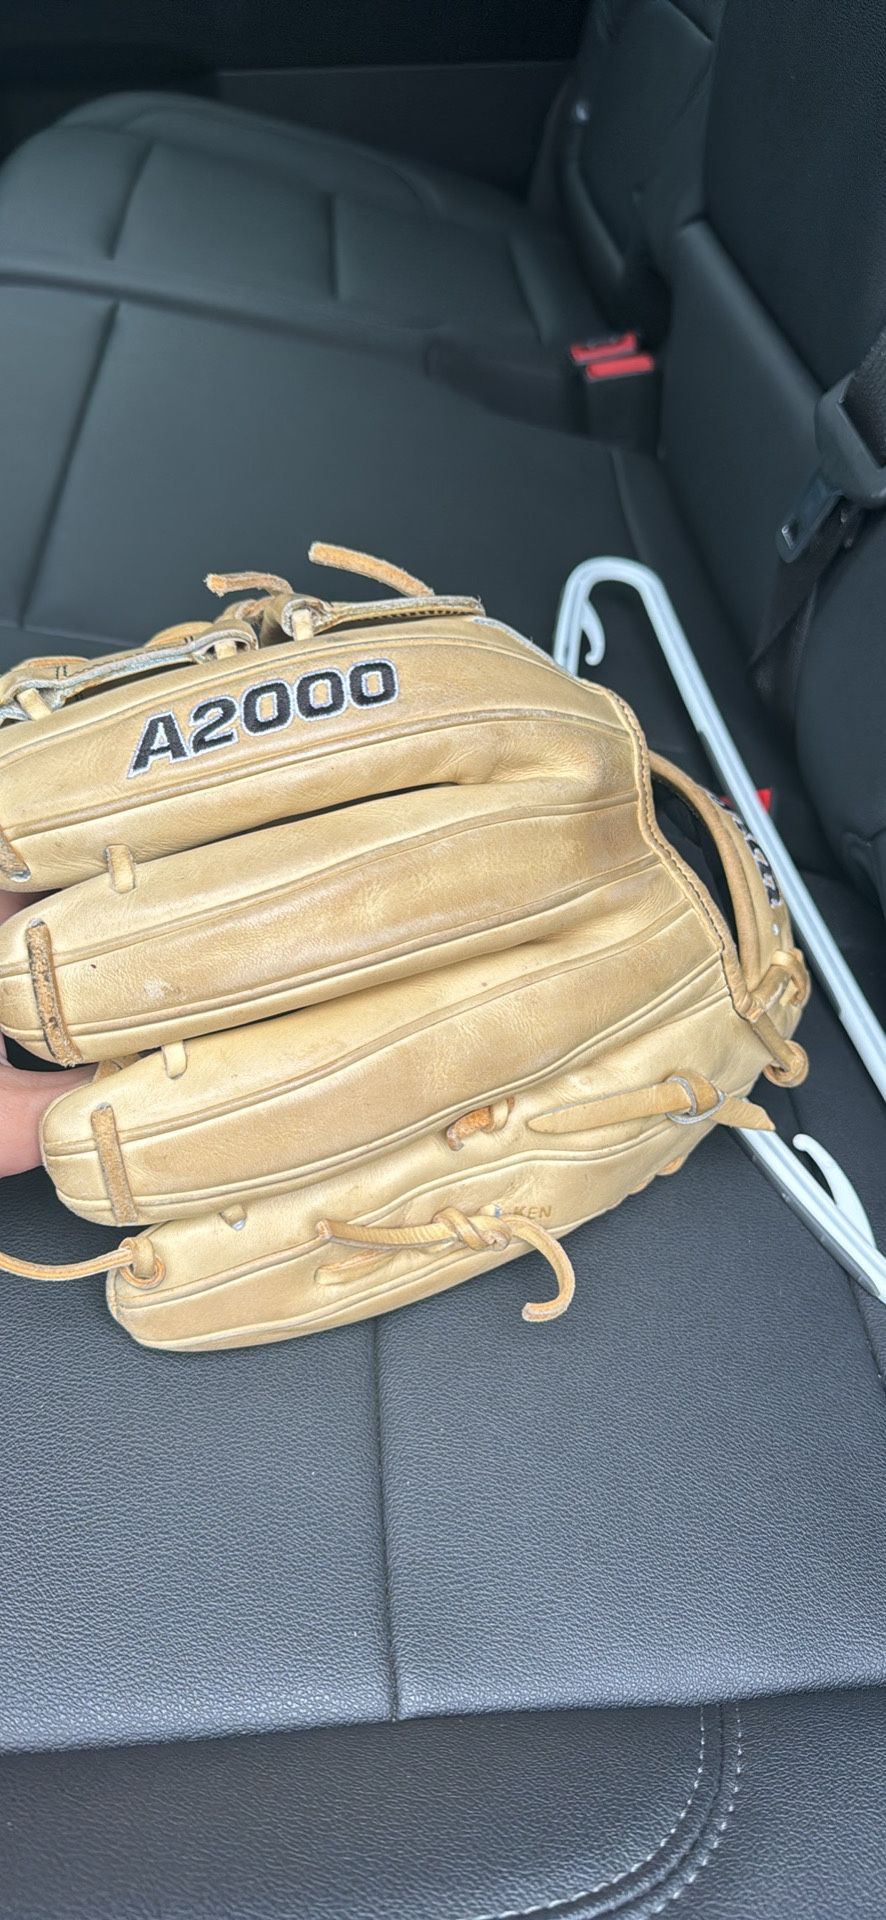 A2000 baseball glove 